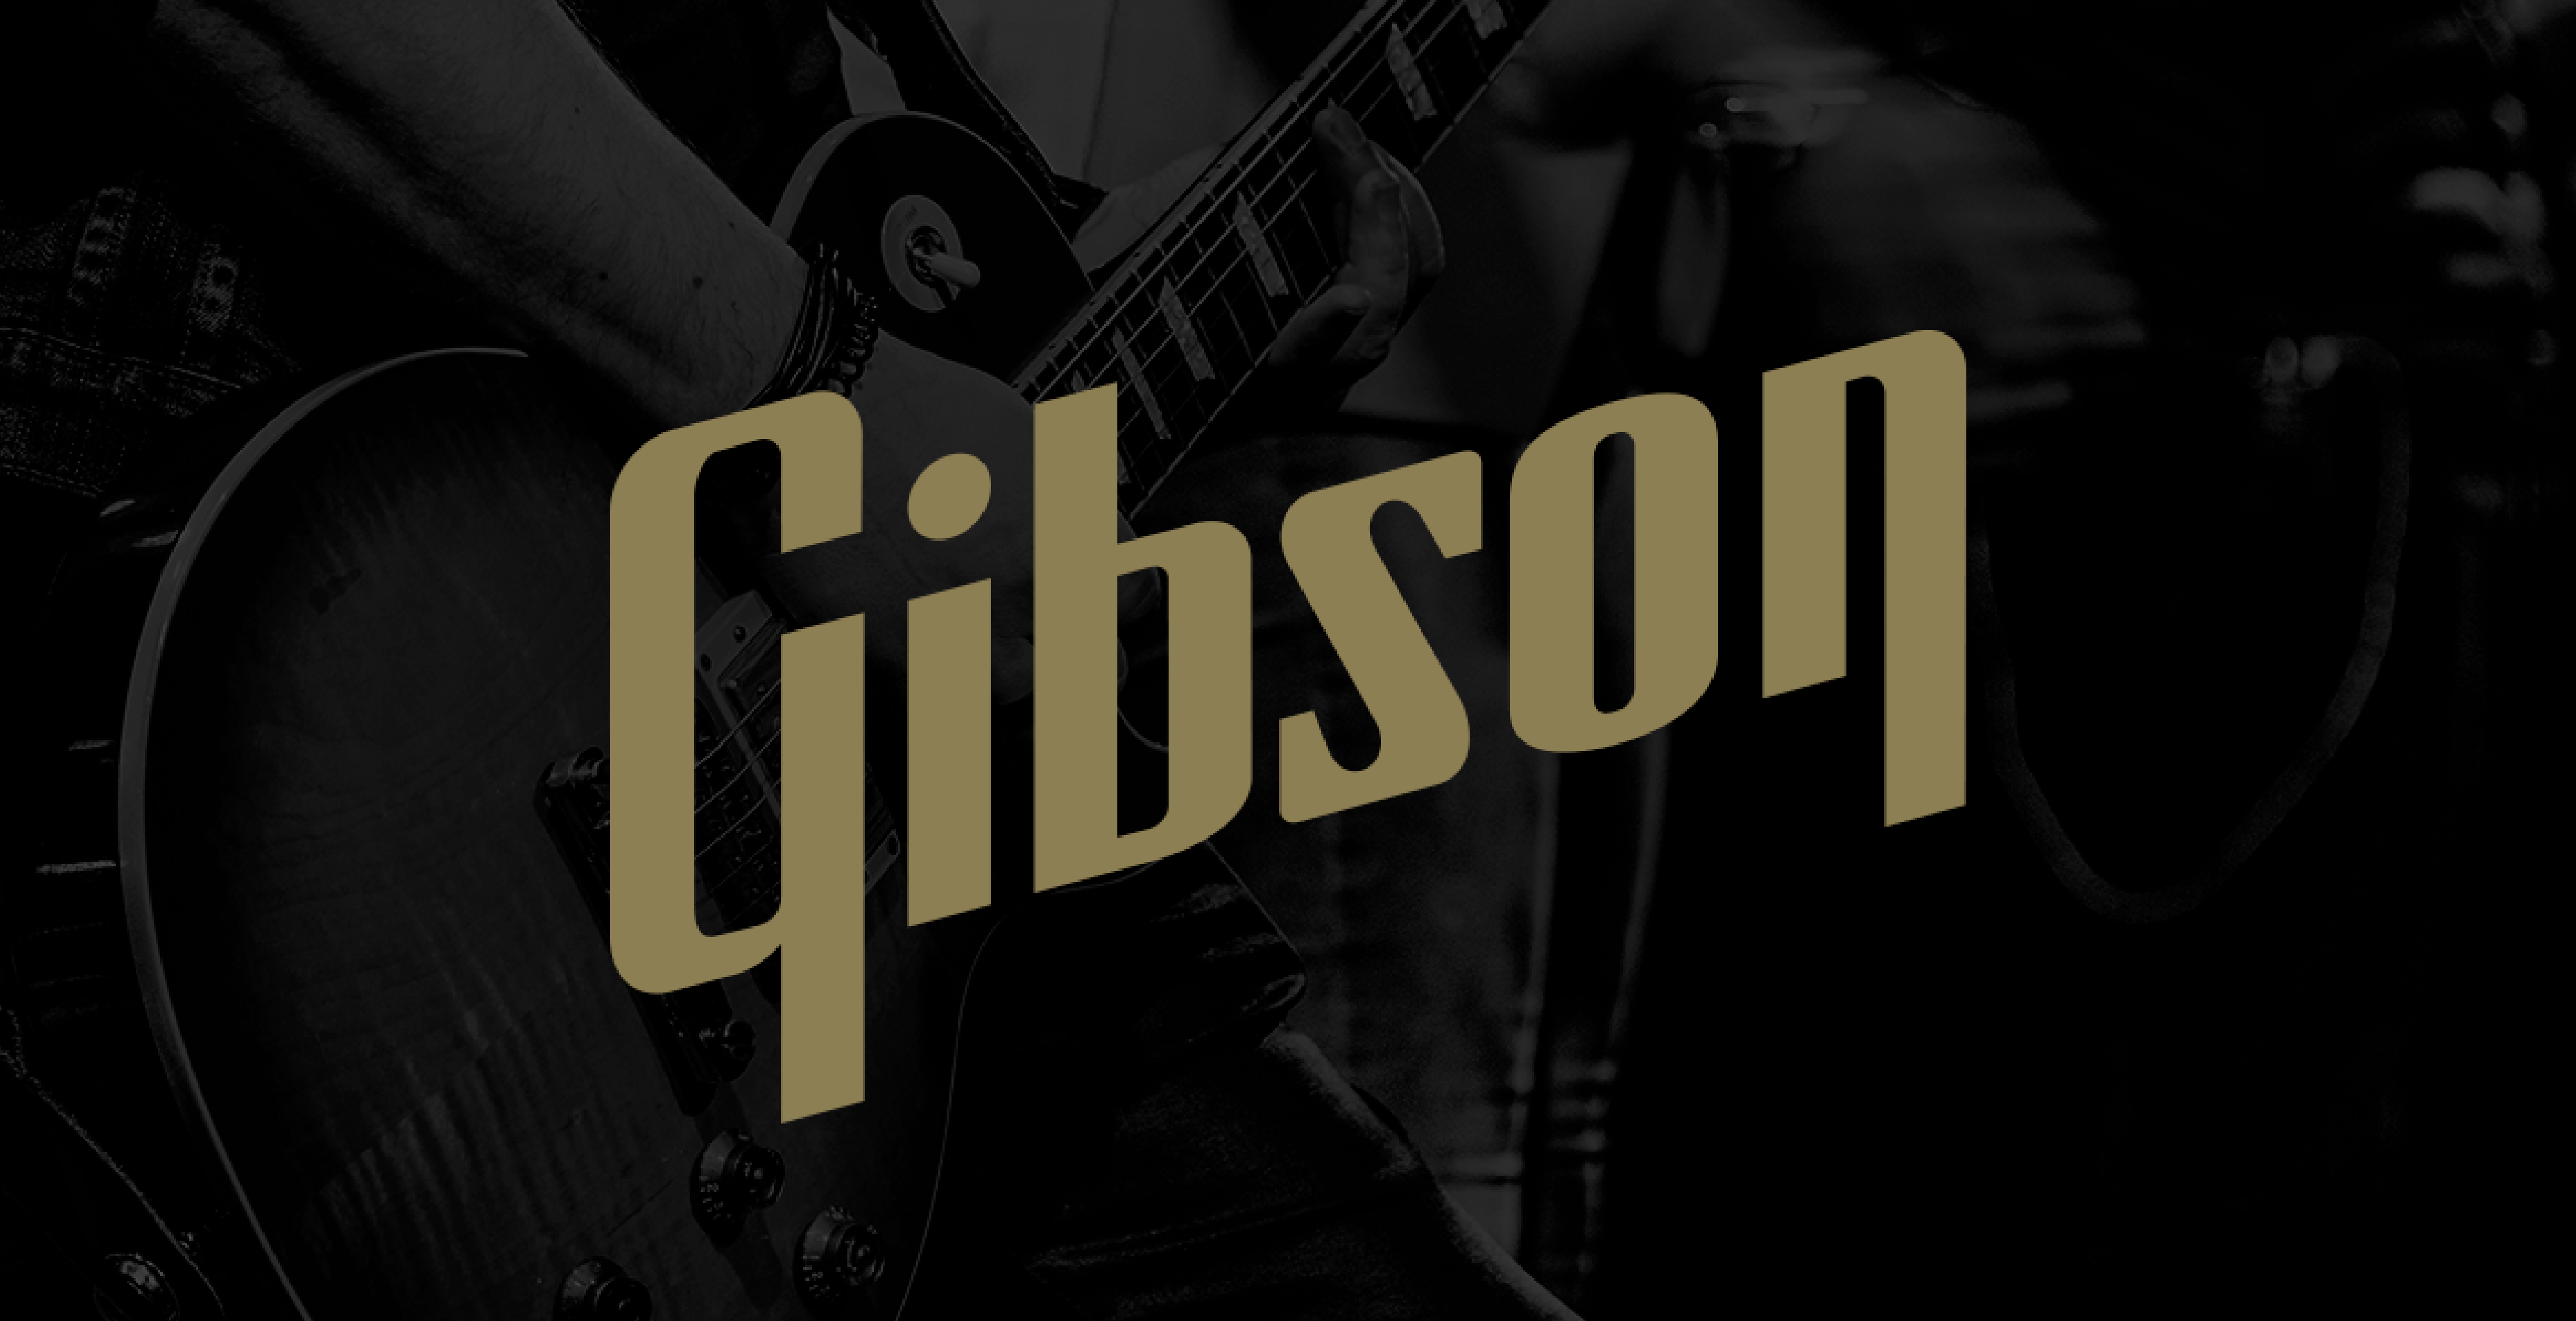 Gibson Rebrand Concept